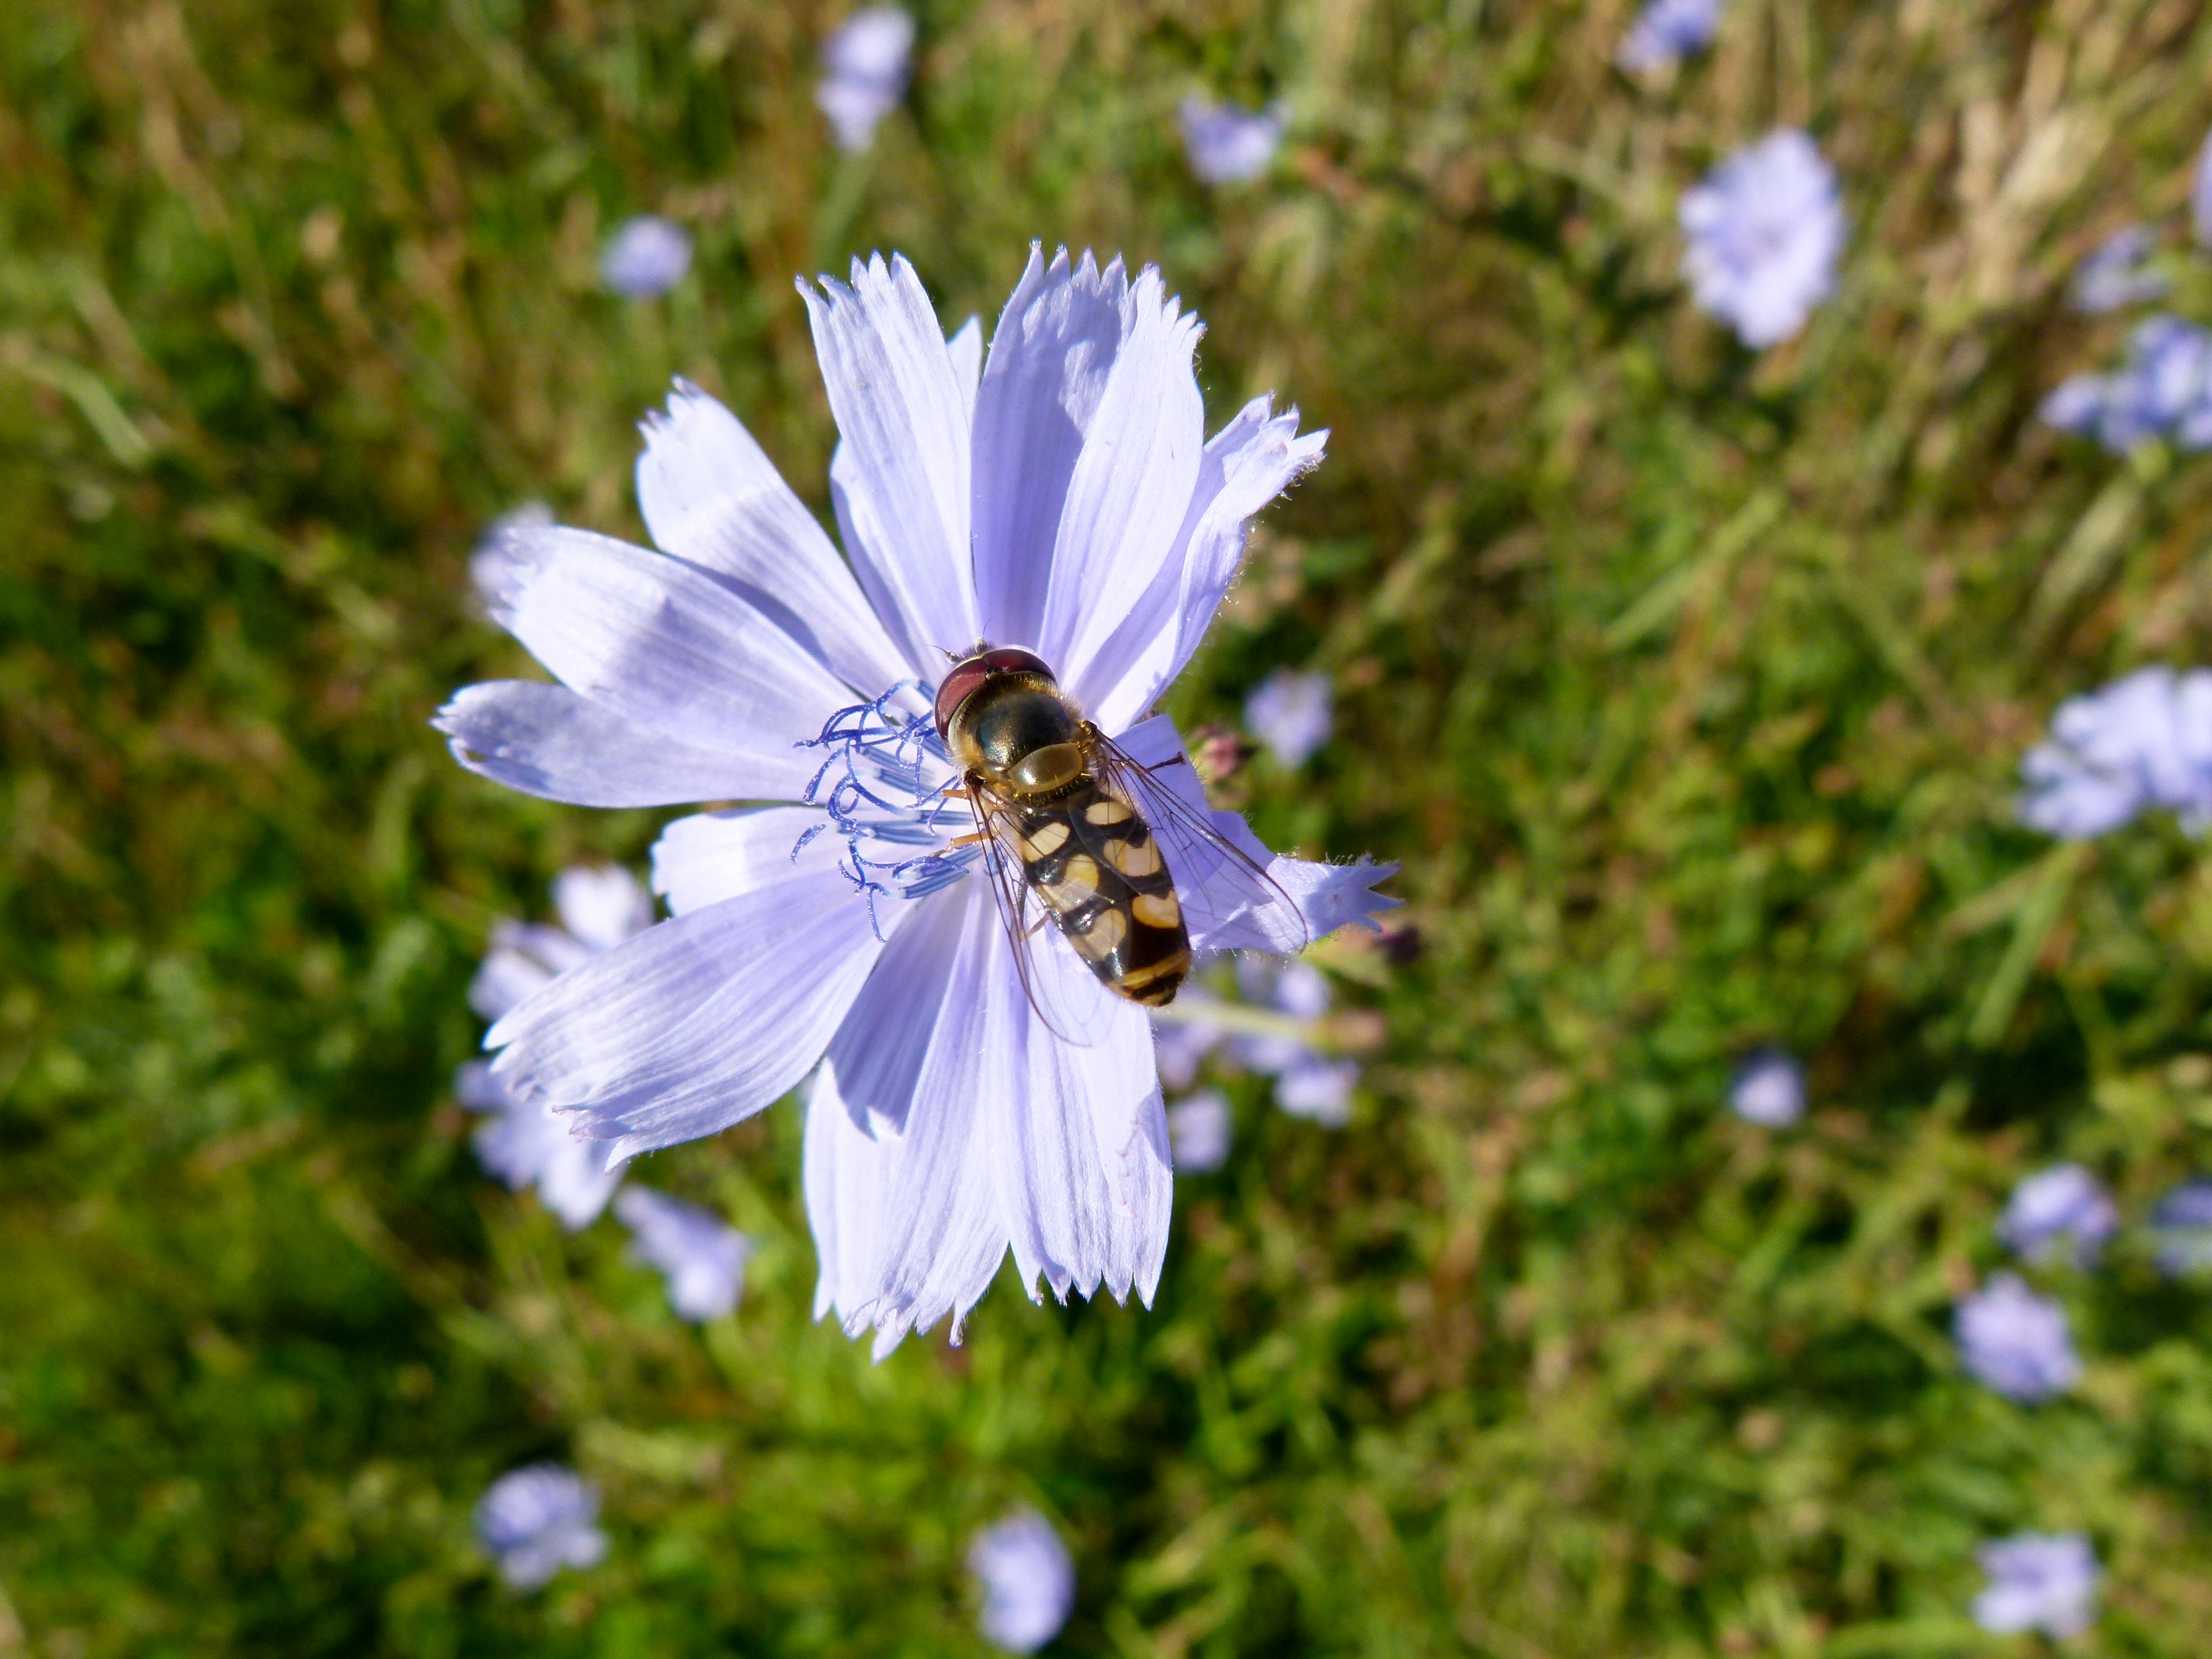 Cichorium intybus and Scaeva pyrastri - Chicory flower with landed hoverfly - Wegwarte mit Schwebfliege 02